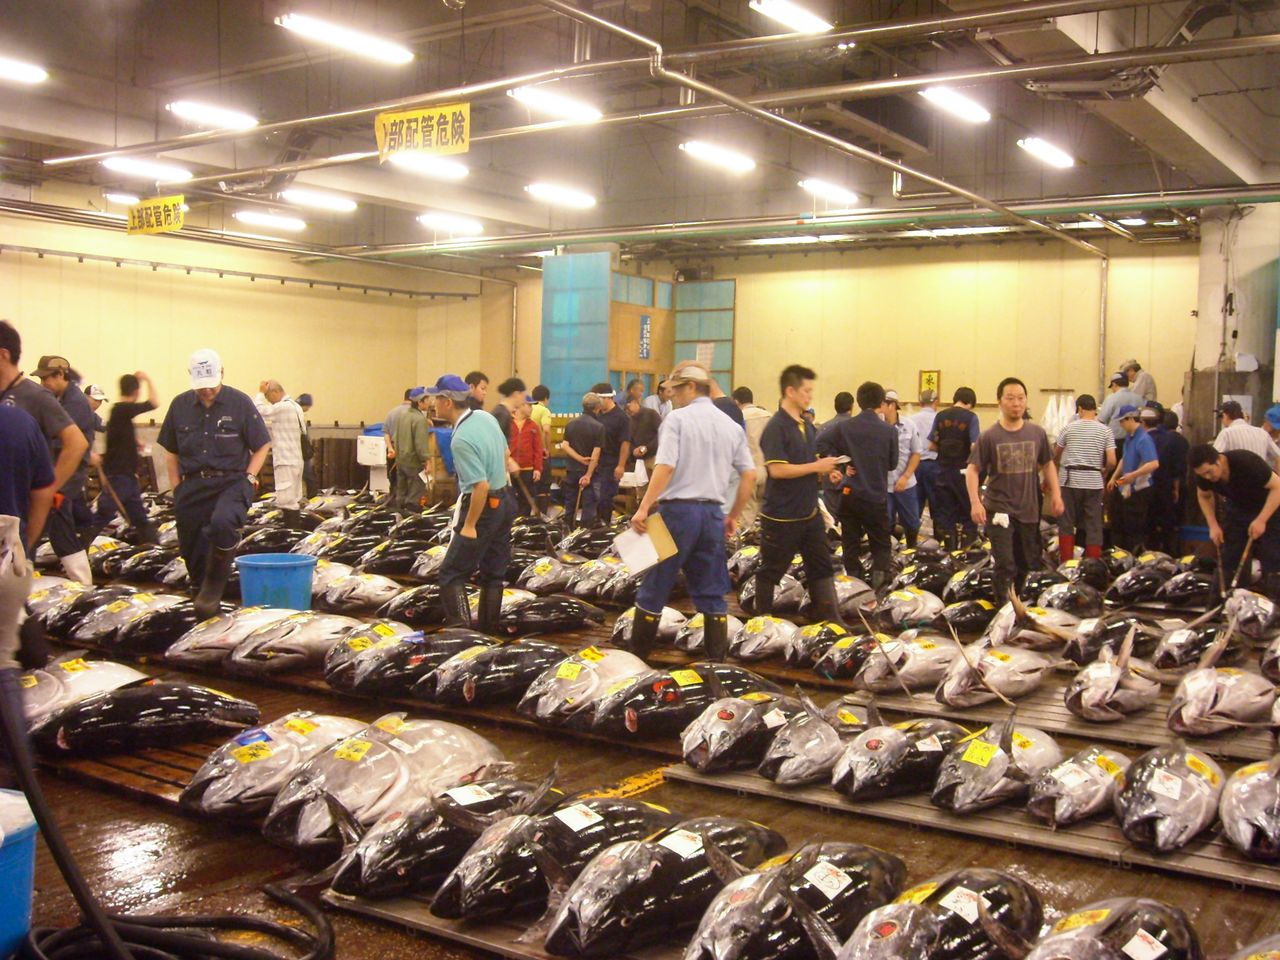 Subasta del atún en el antiguo mercado de Tsukiji. Desde la época de la burbuja, ha ido disminuyendo la cantidad de ejemplares que entran en la lonja.